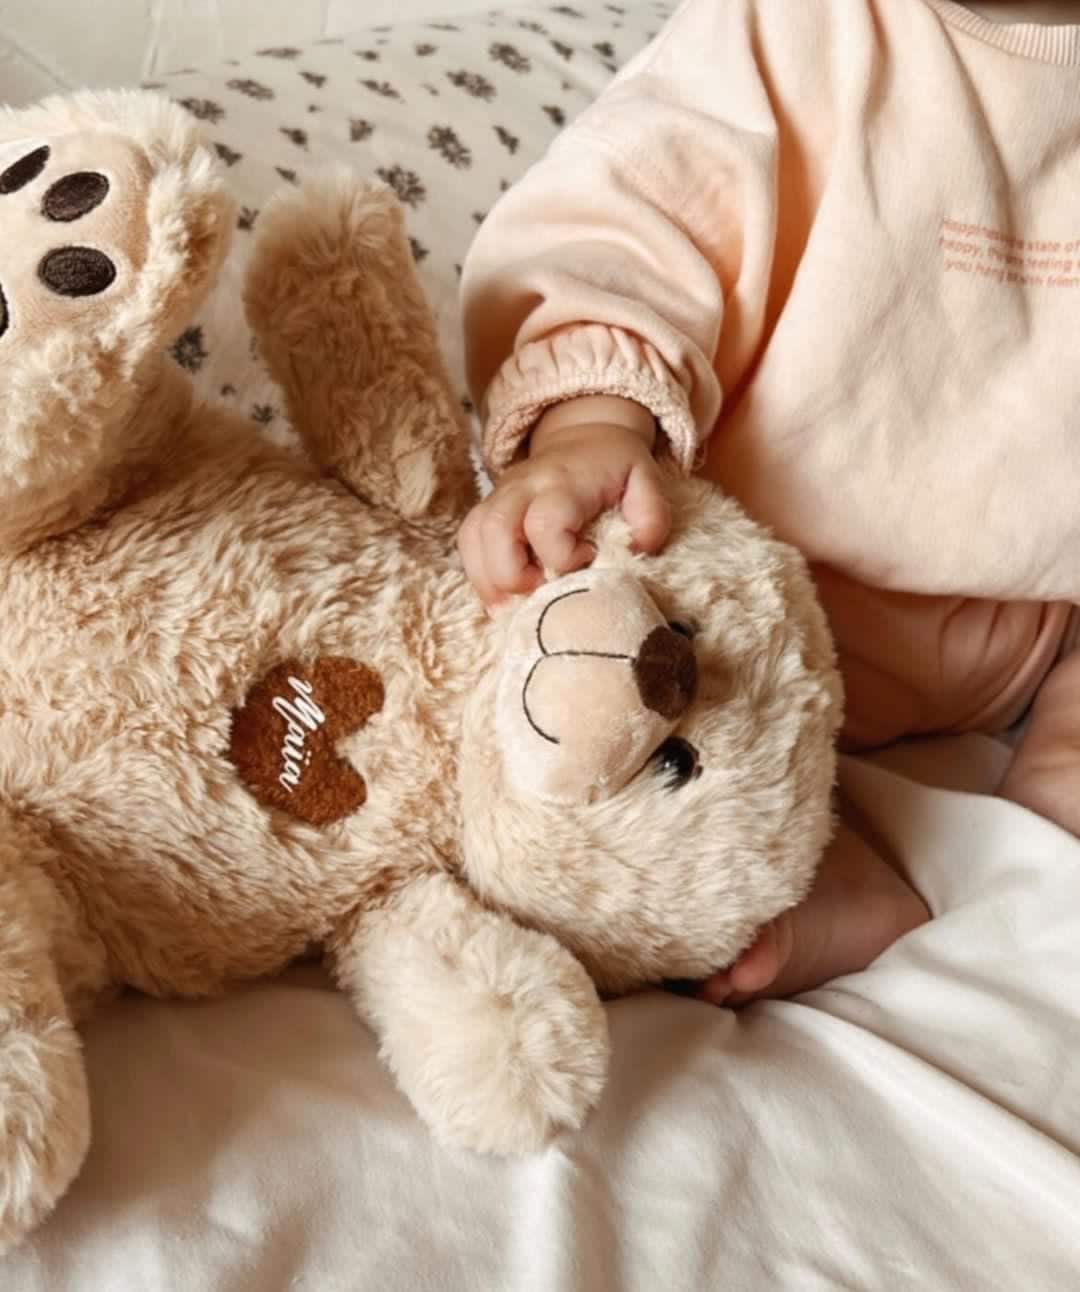 Coffret veilleuse bébé garçon beige/turquoise et doudou ours + couverture  bébé